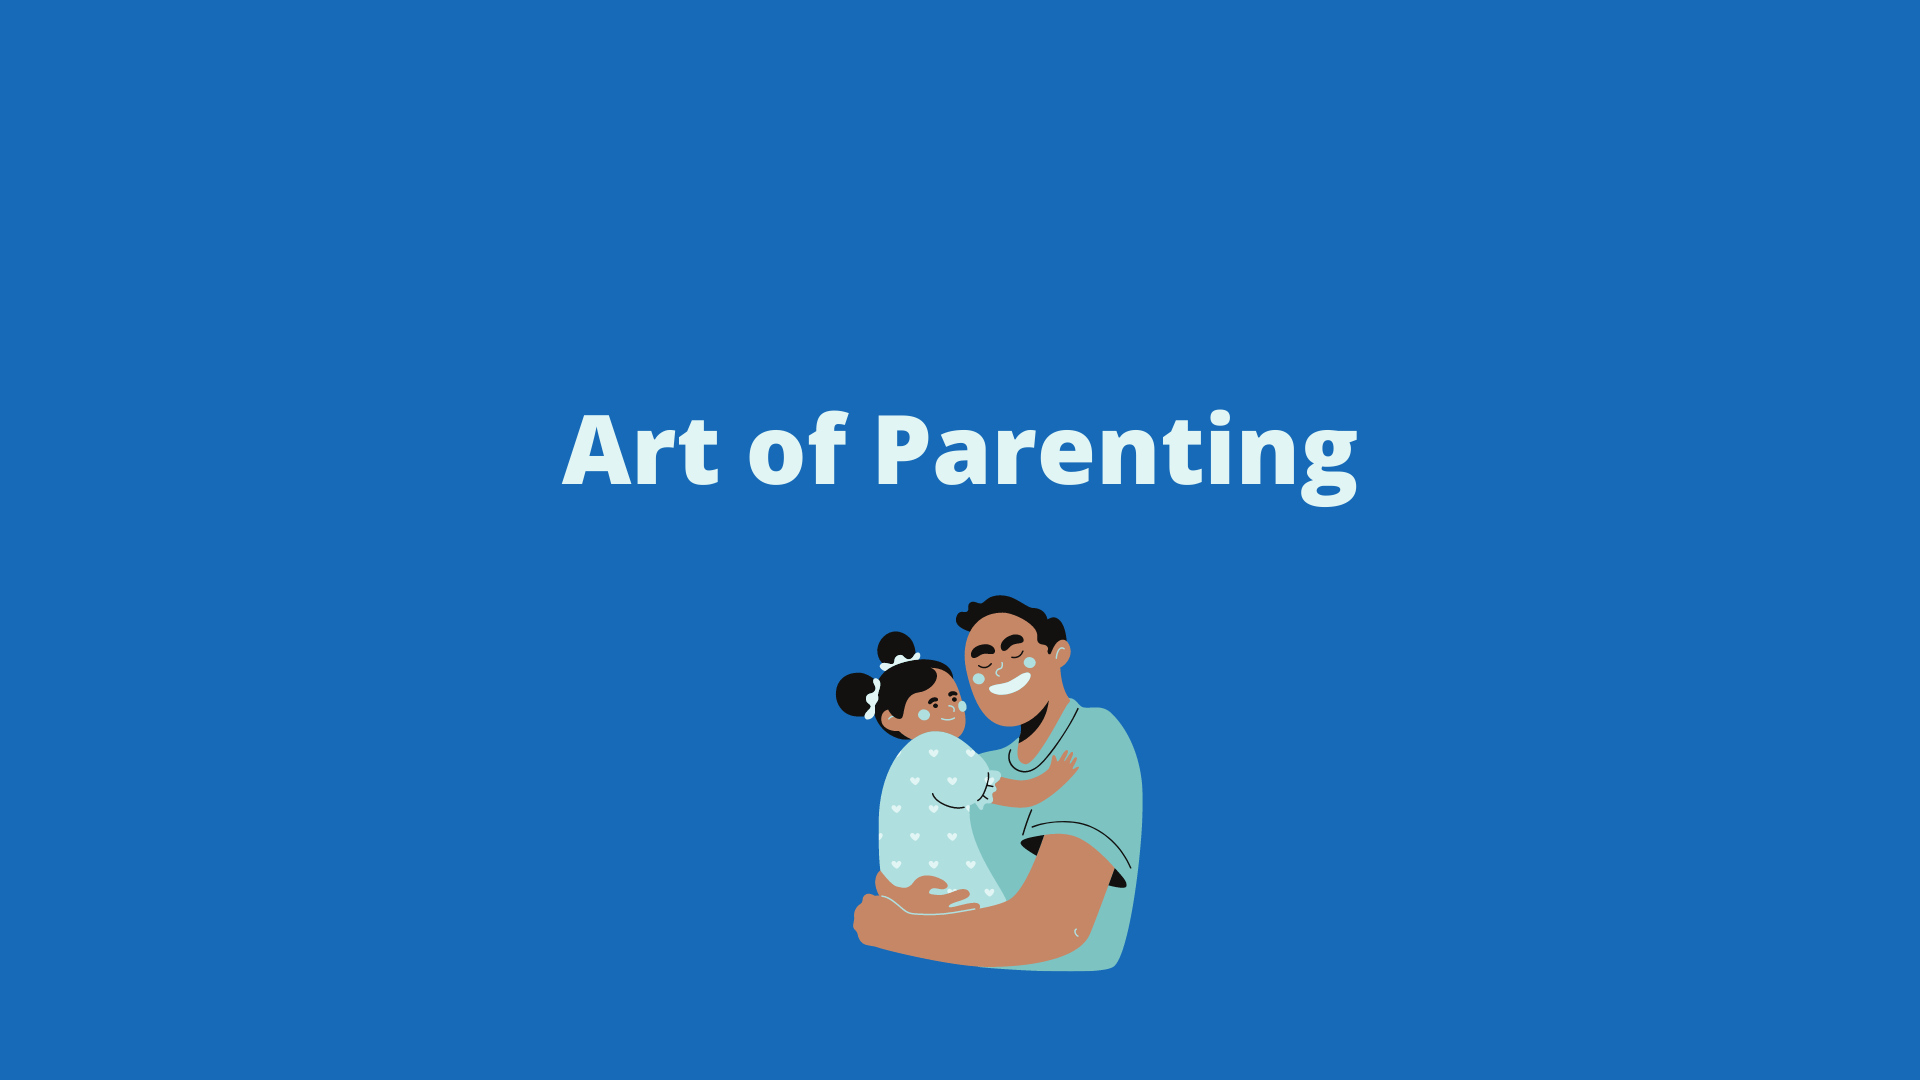 Art of parenting